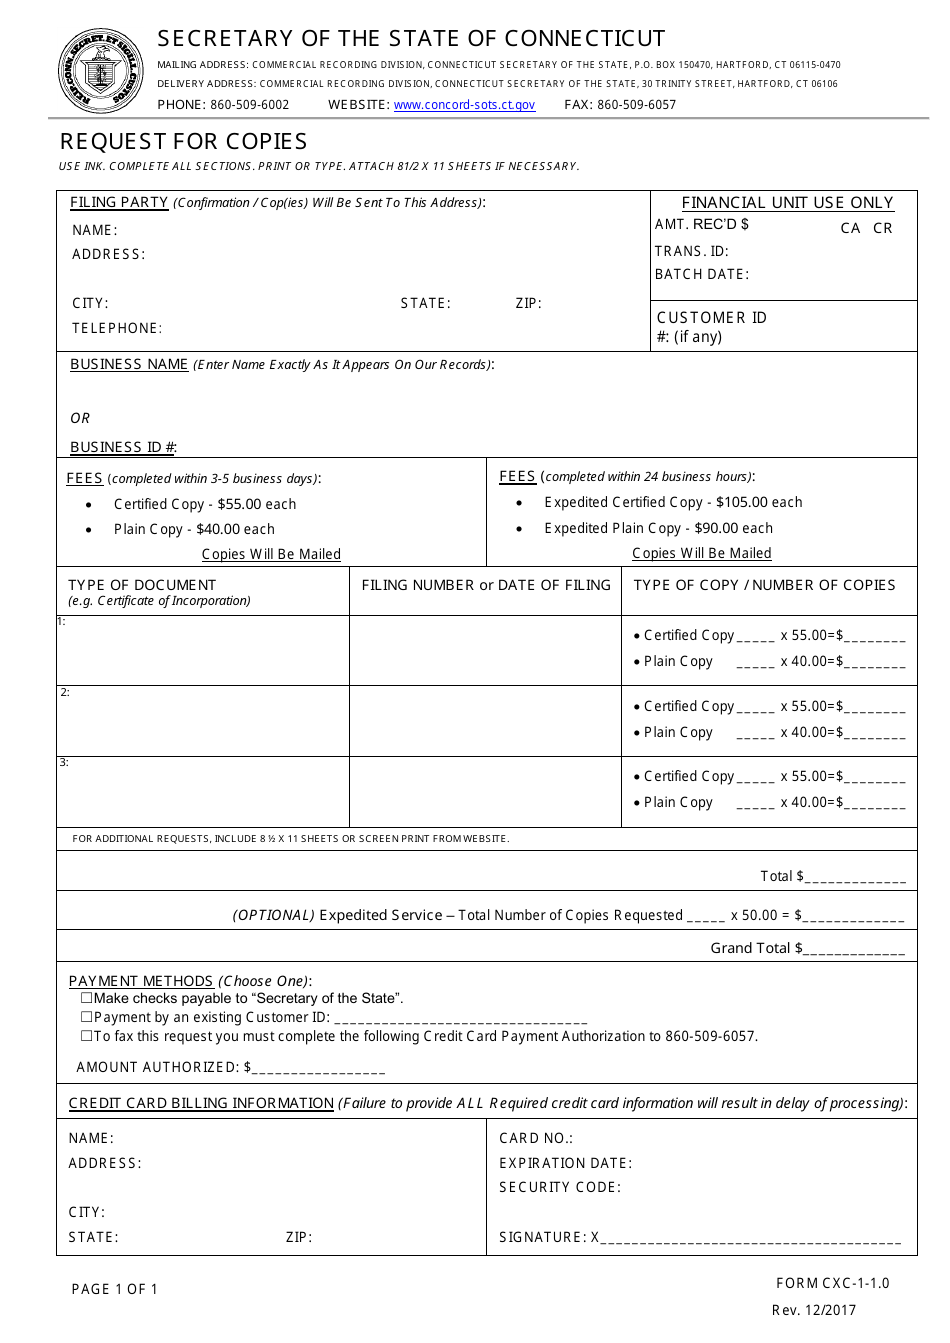 Form CXC-1-1.0 Request for Copies - Connecticut, Page 1